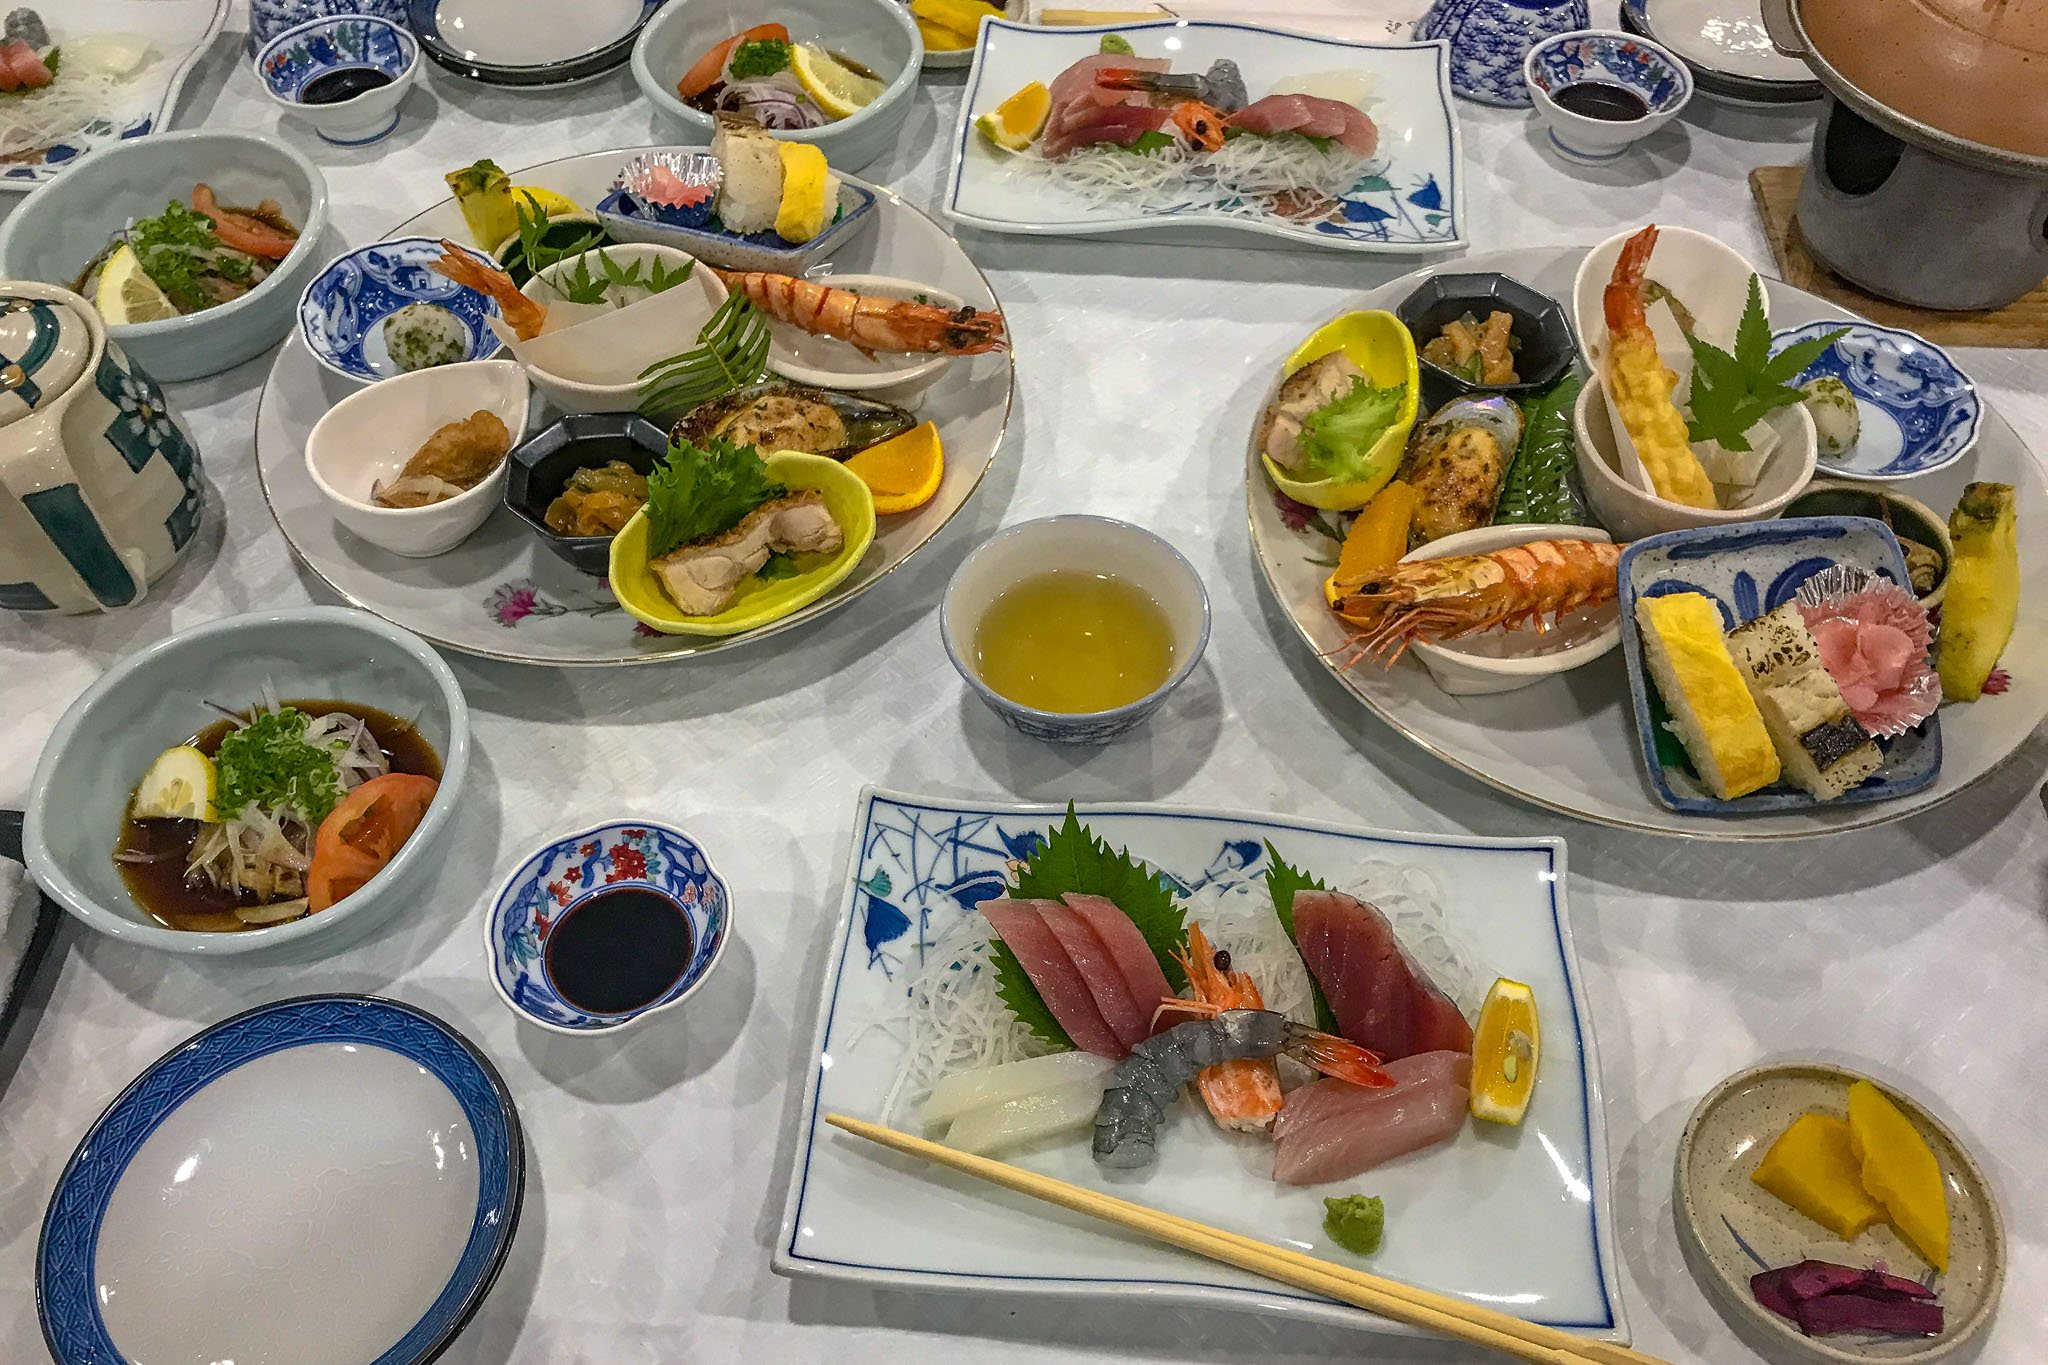 Samurai Japan meal-7924.jpg